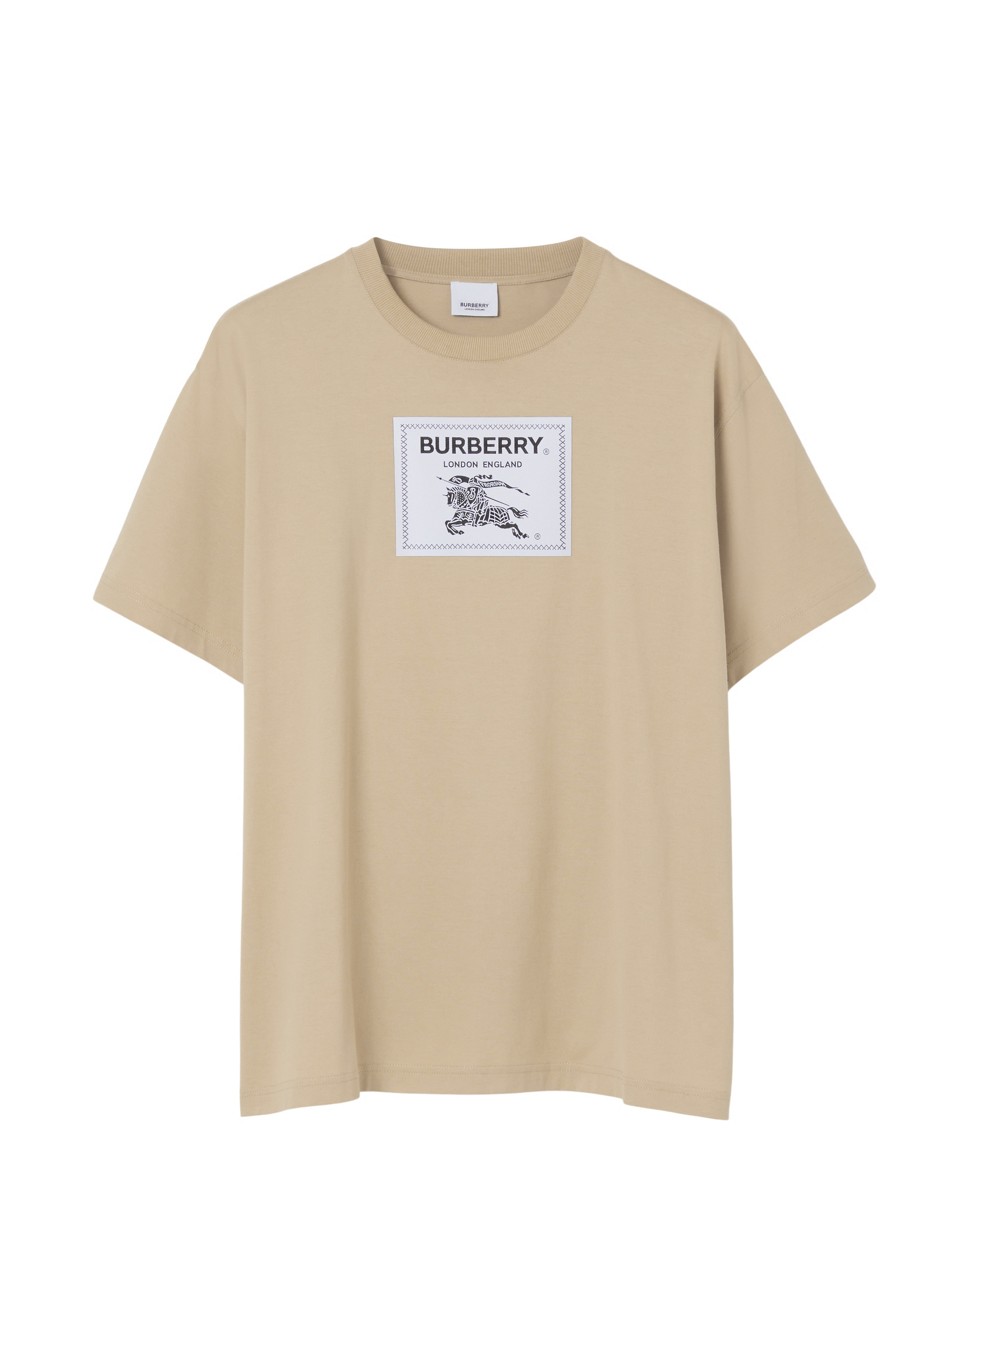 Burberry Prorsum Label Cotton Oversized T-shirt Tops | Heathrow Boutique